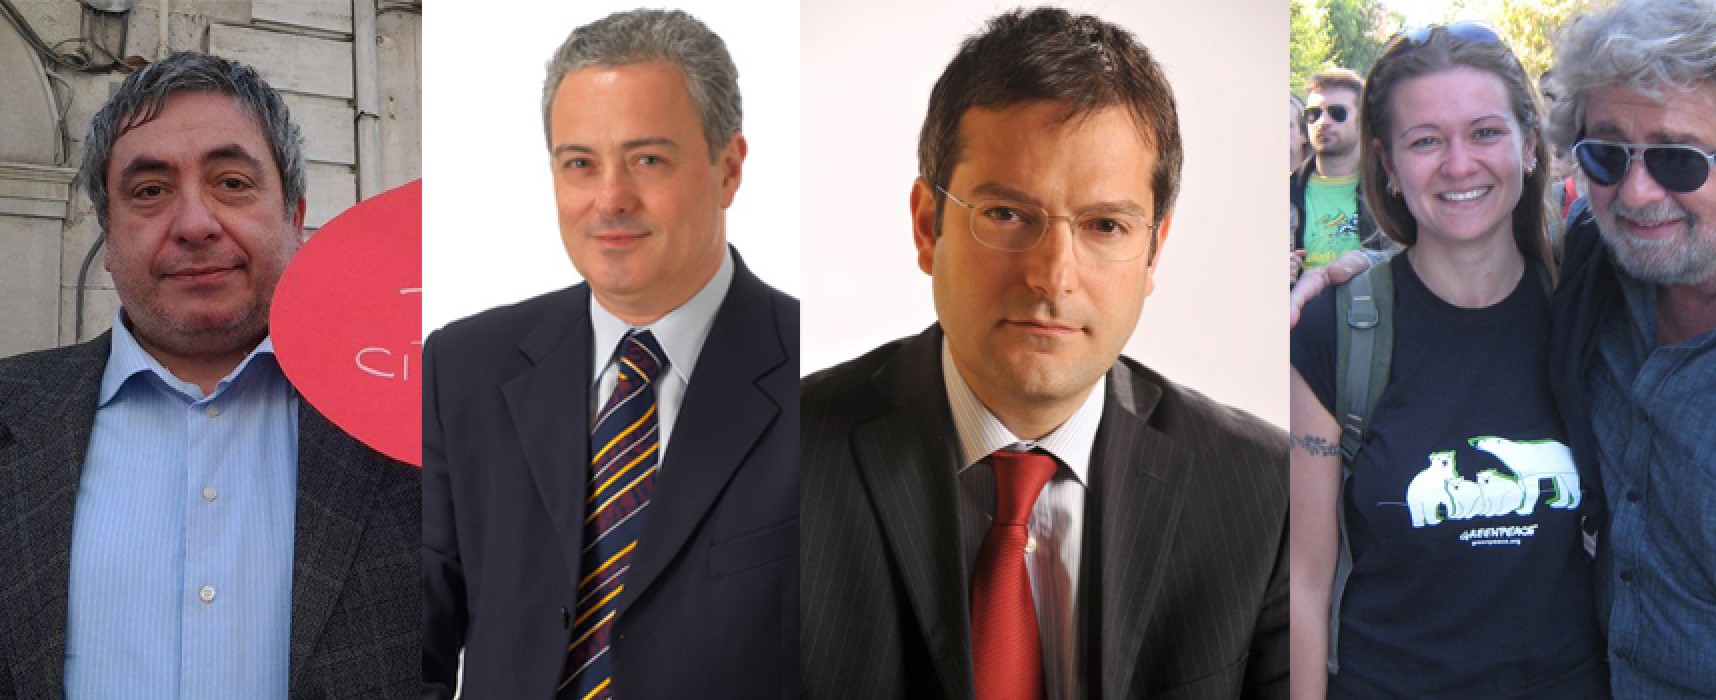 Elezioni Europee 2014, intervista a Napoletano, Pozzolungo, Mastrapasqua e Angarano